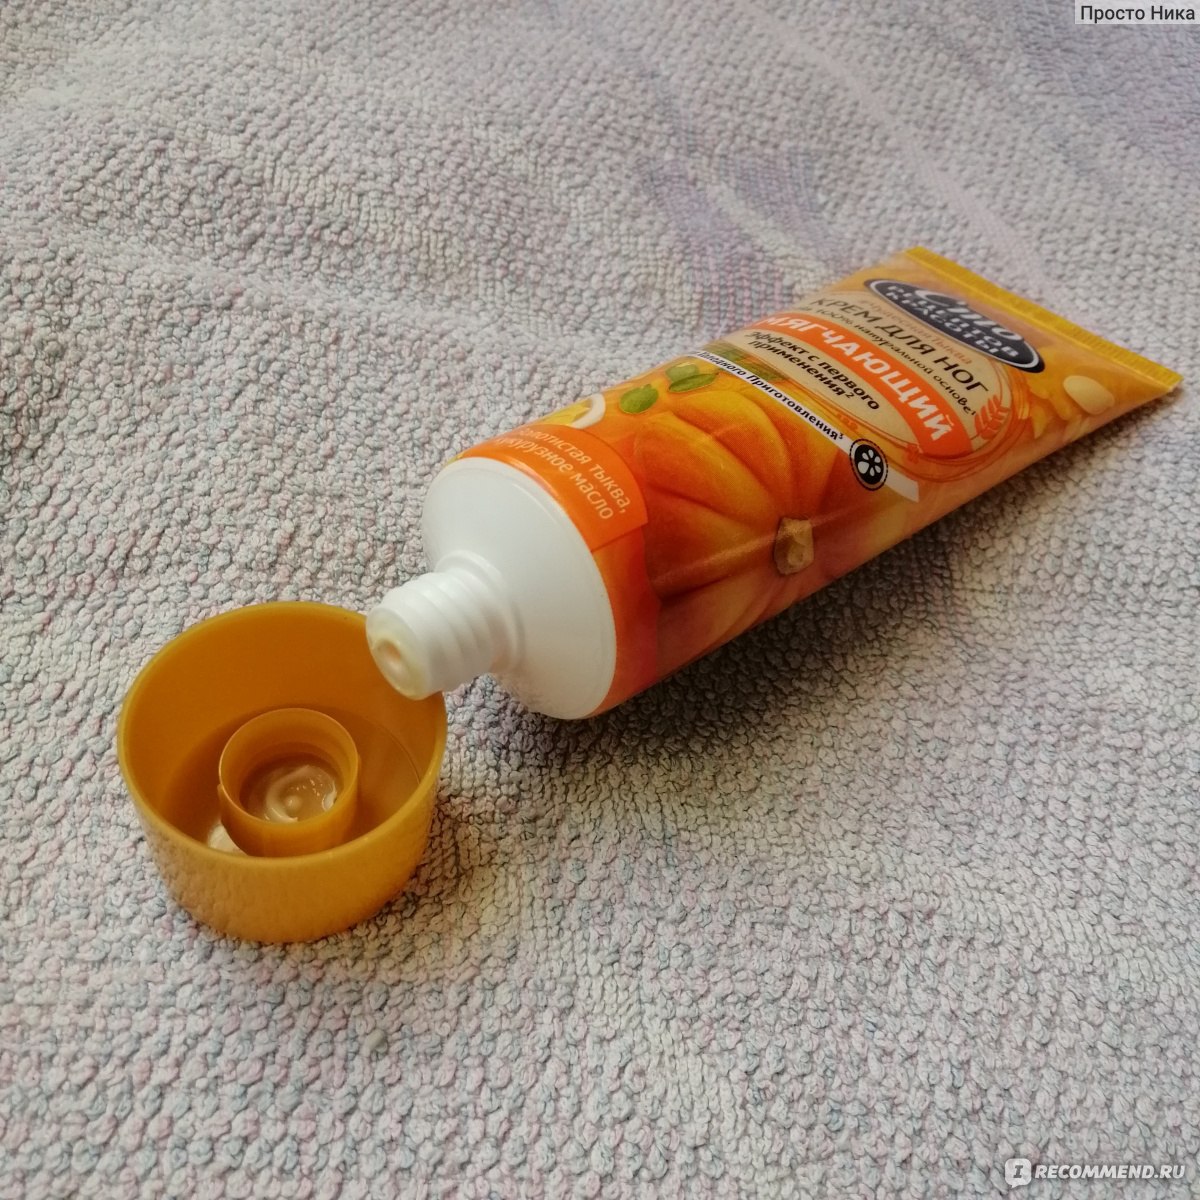 Оранжевый тюбик. Крем для ног оранжевый тюбик. Крем для лица в оранжевом тюбике. Маска для волос оранжевый тюбик.